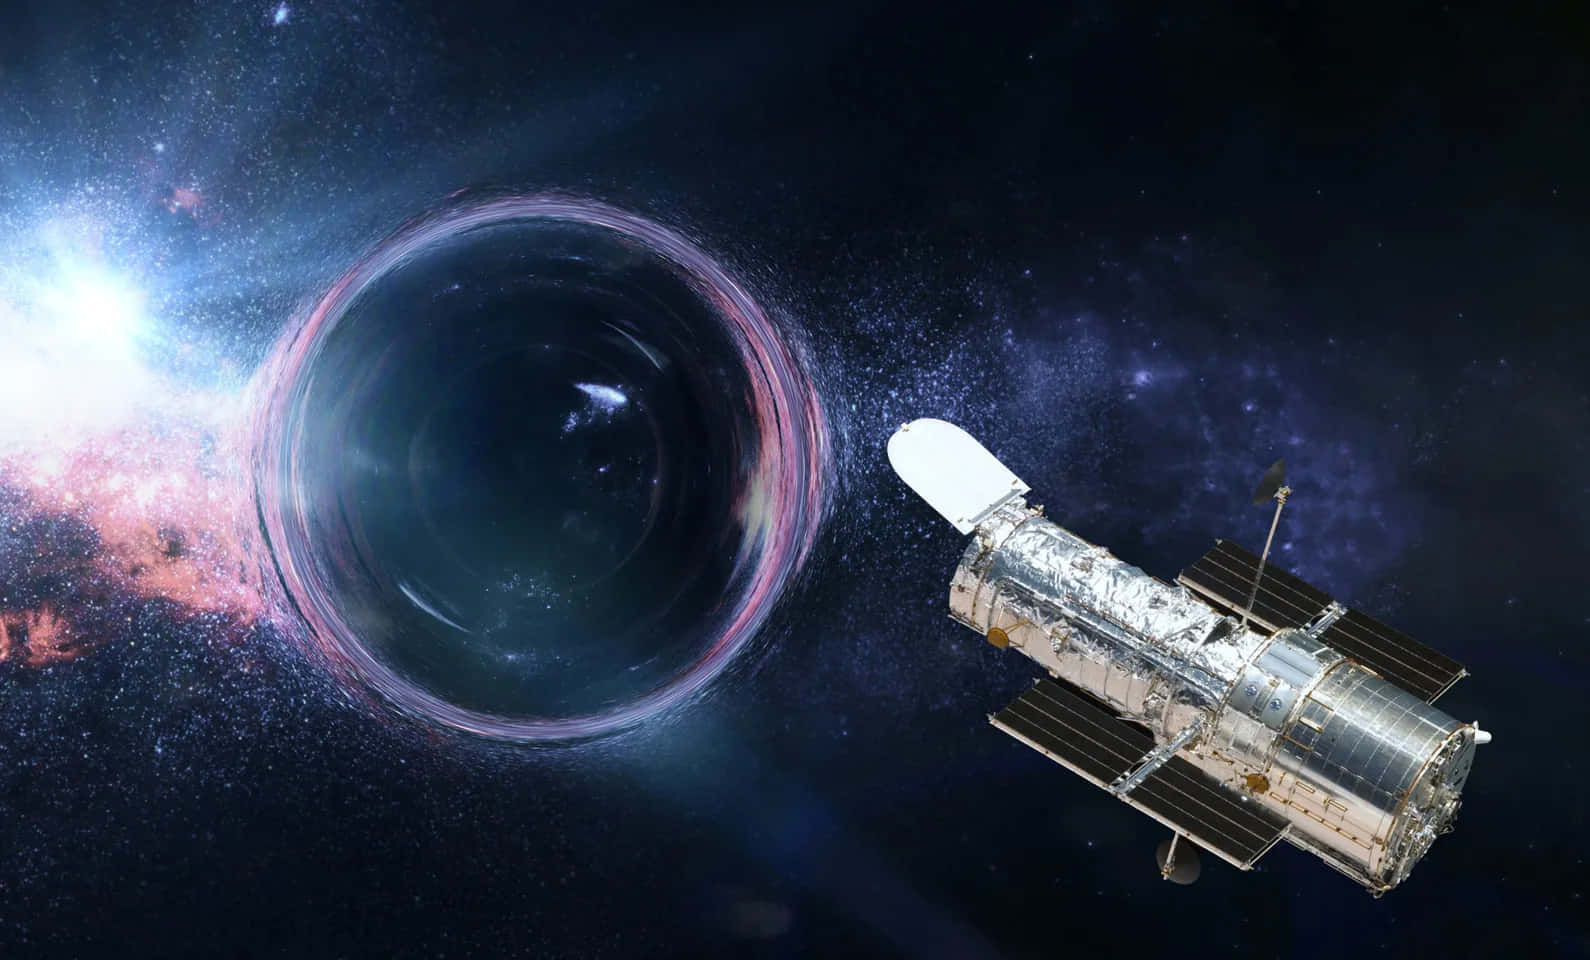 Attbevittna Ett Sällsynt, Avlägset Svart Hål Med Hubble-teleskopet.